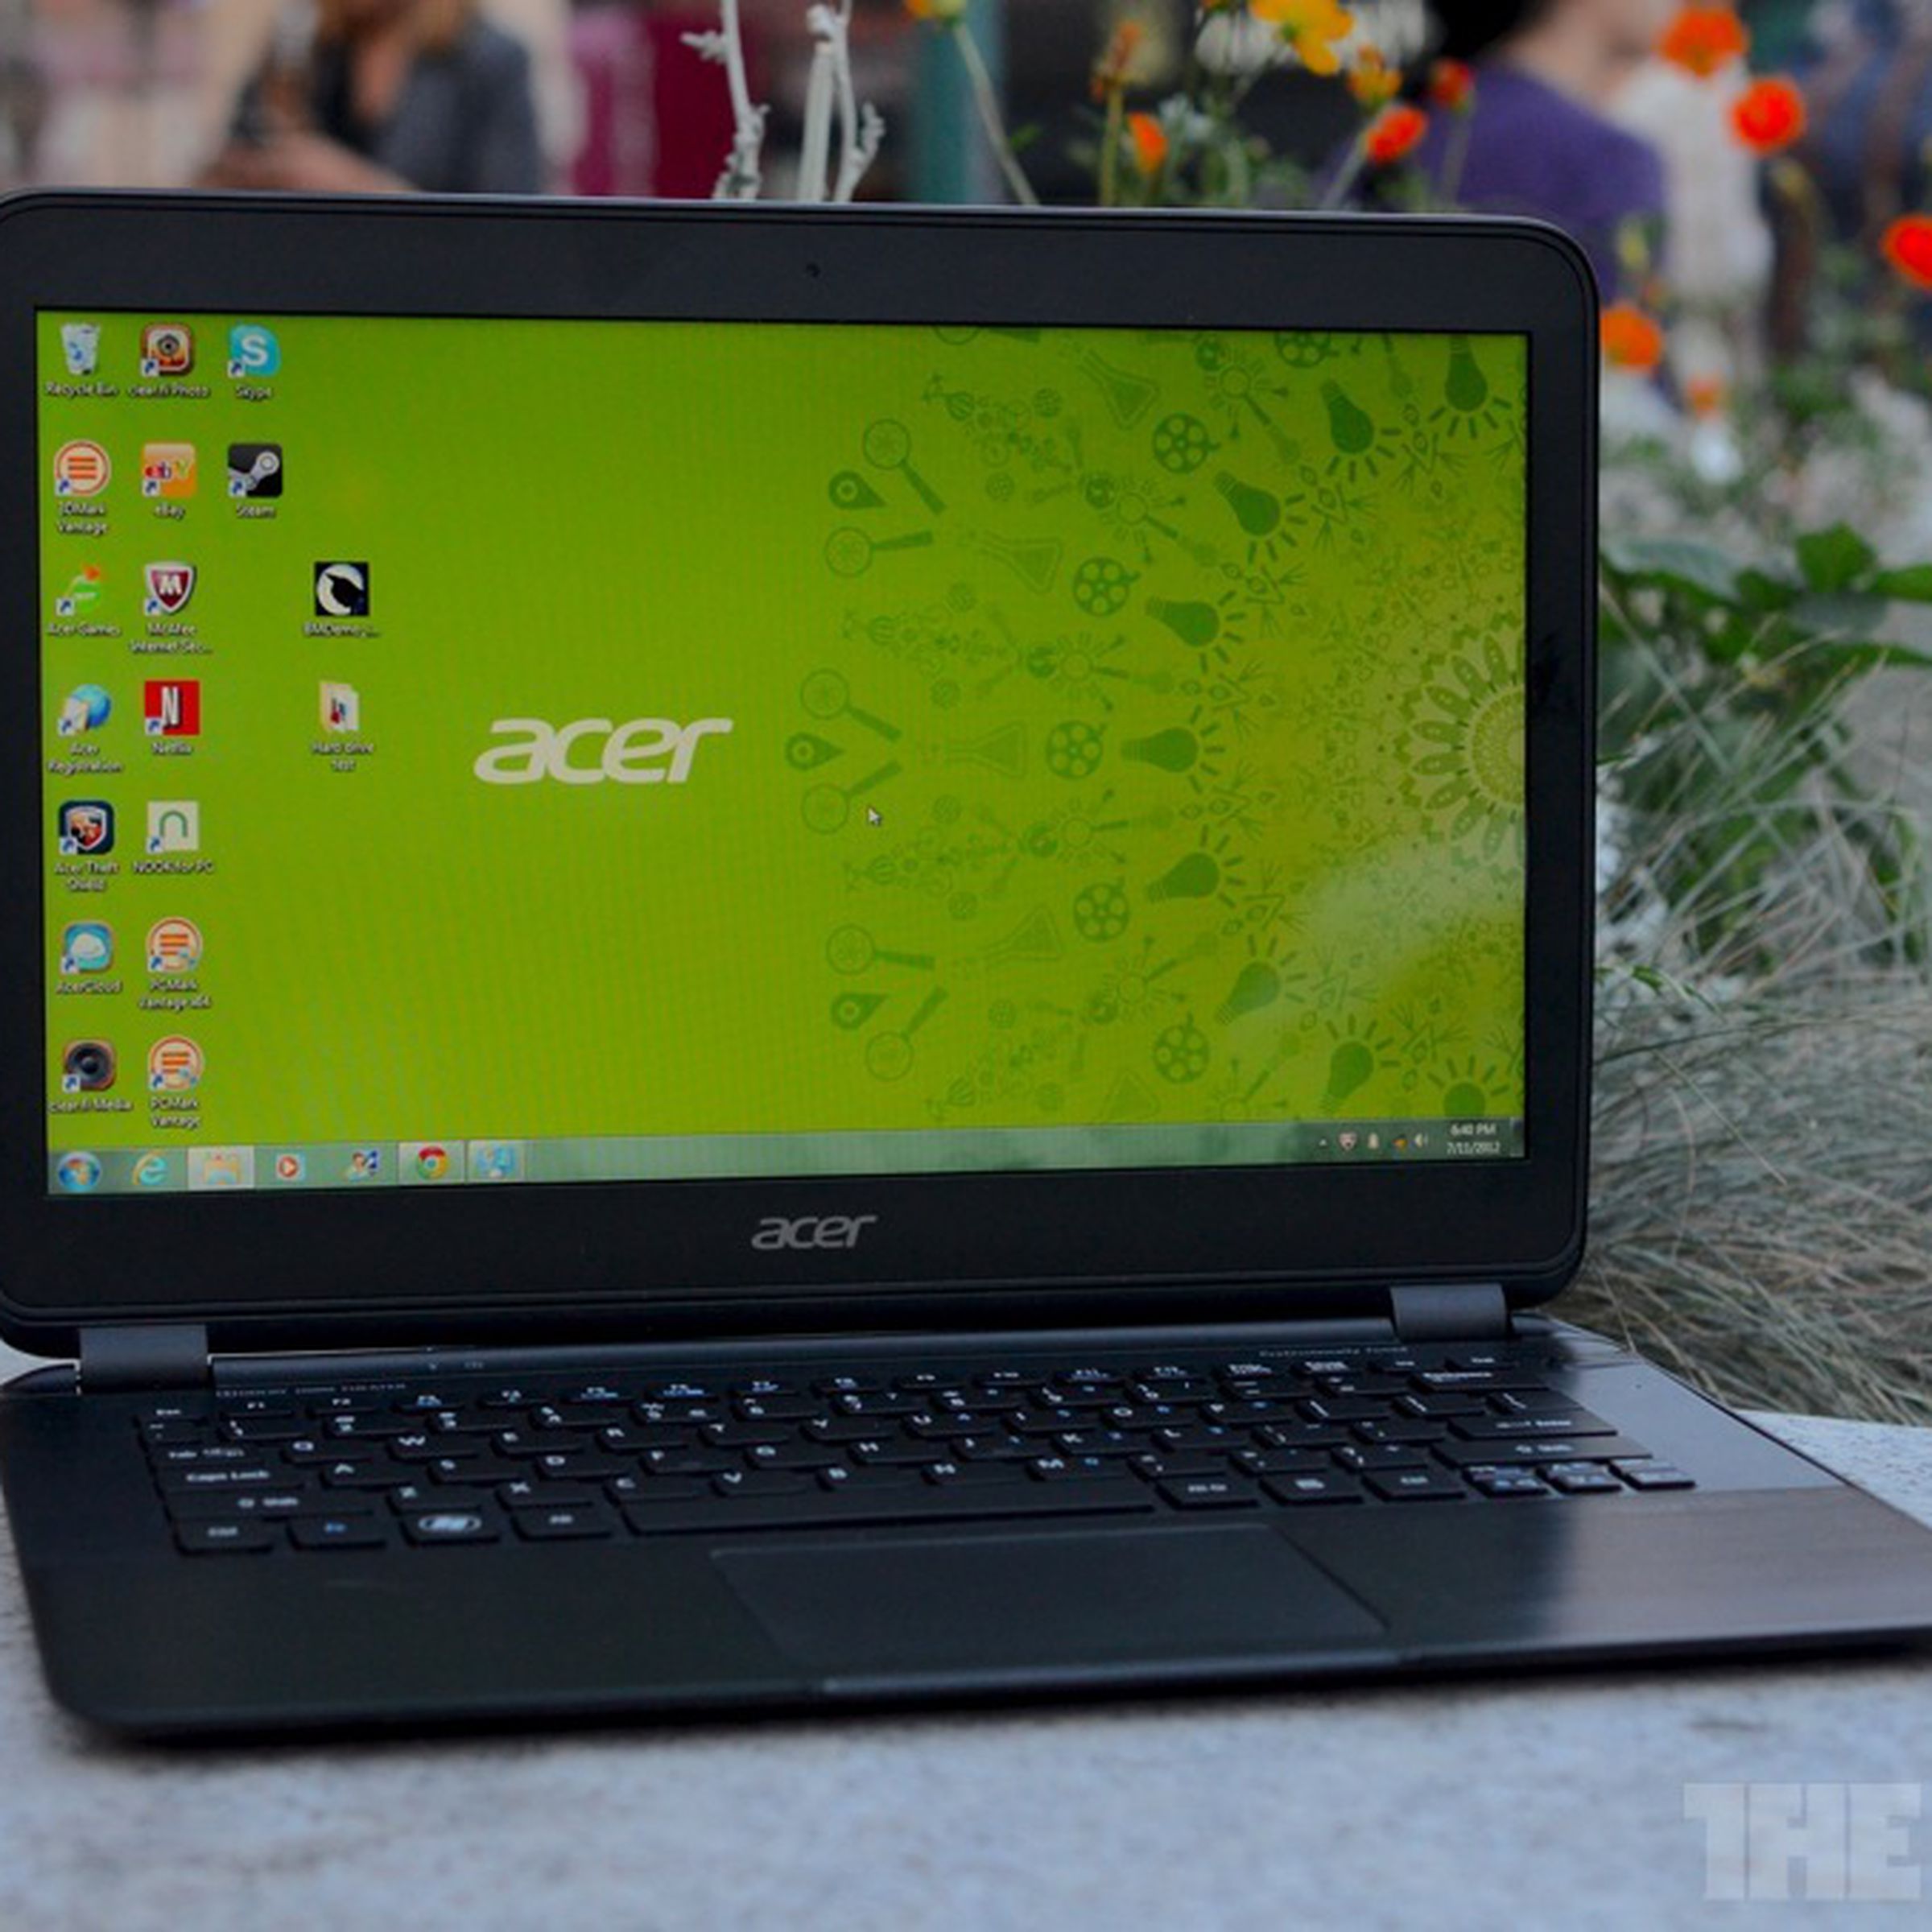 Acer Aspire S5 hero (1024px)